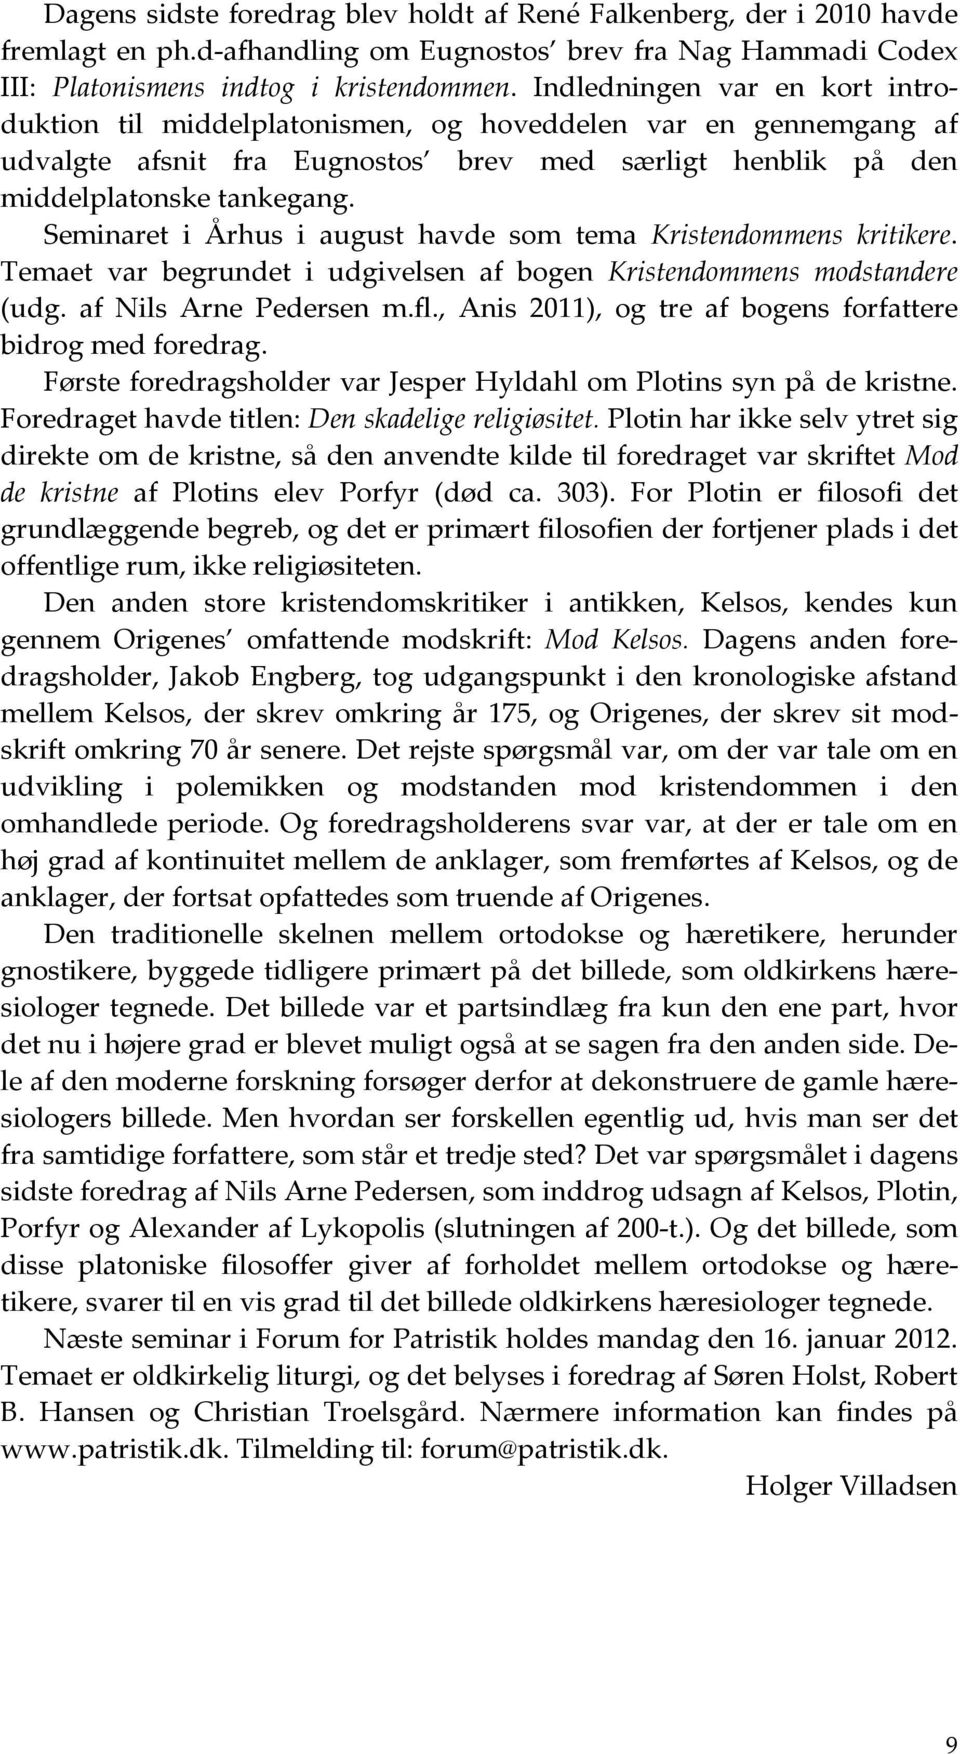 Seminaret i Århus i august havde som tema Kristendommens kritikere. Temaet var begrundet i udgivelsen af bogen Kristendommens modstandere (udg. af Nils Arne Pedersen m.fl.